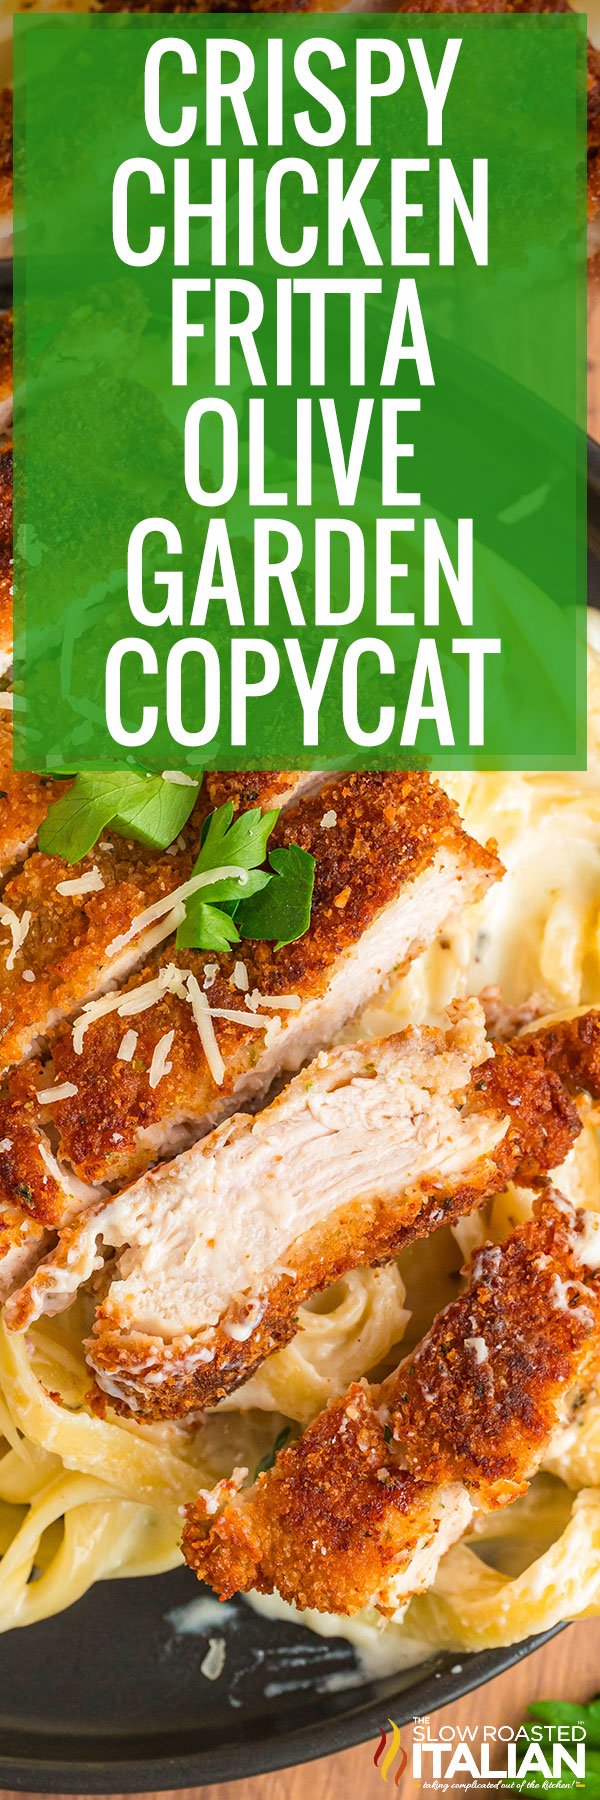 Crispy Chicken Fritta Olive Garden Copycat - PIN